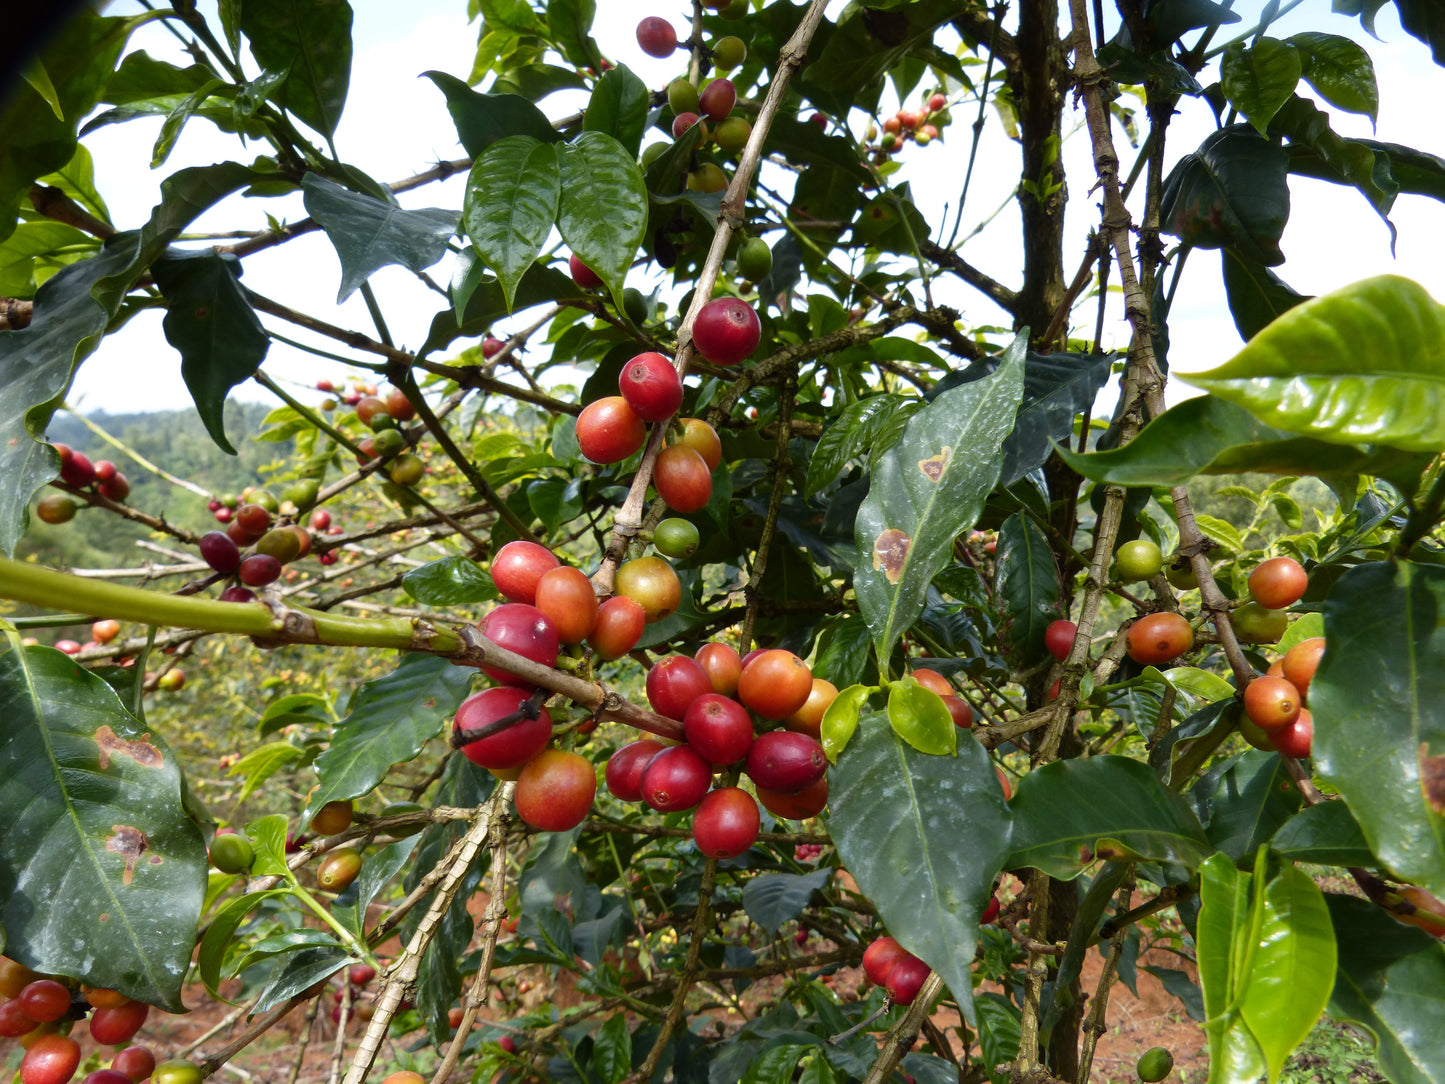 Kenya, Duma, koffieplant